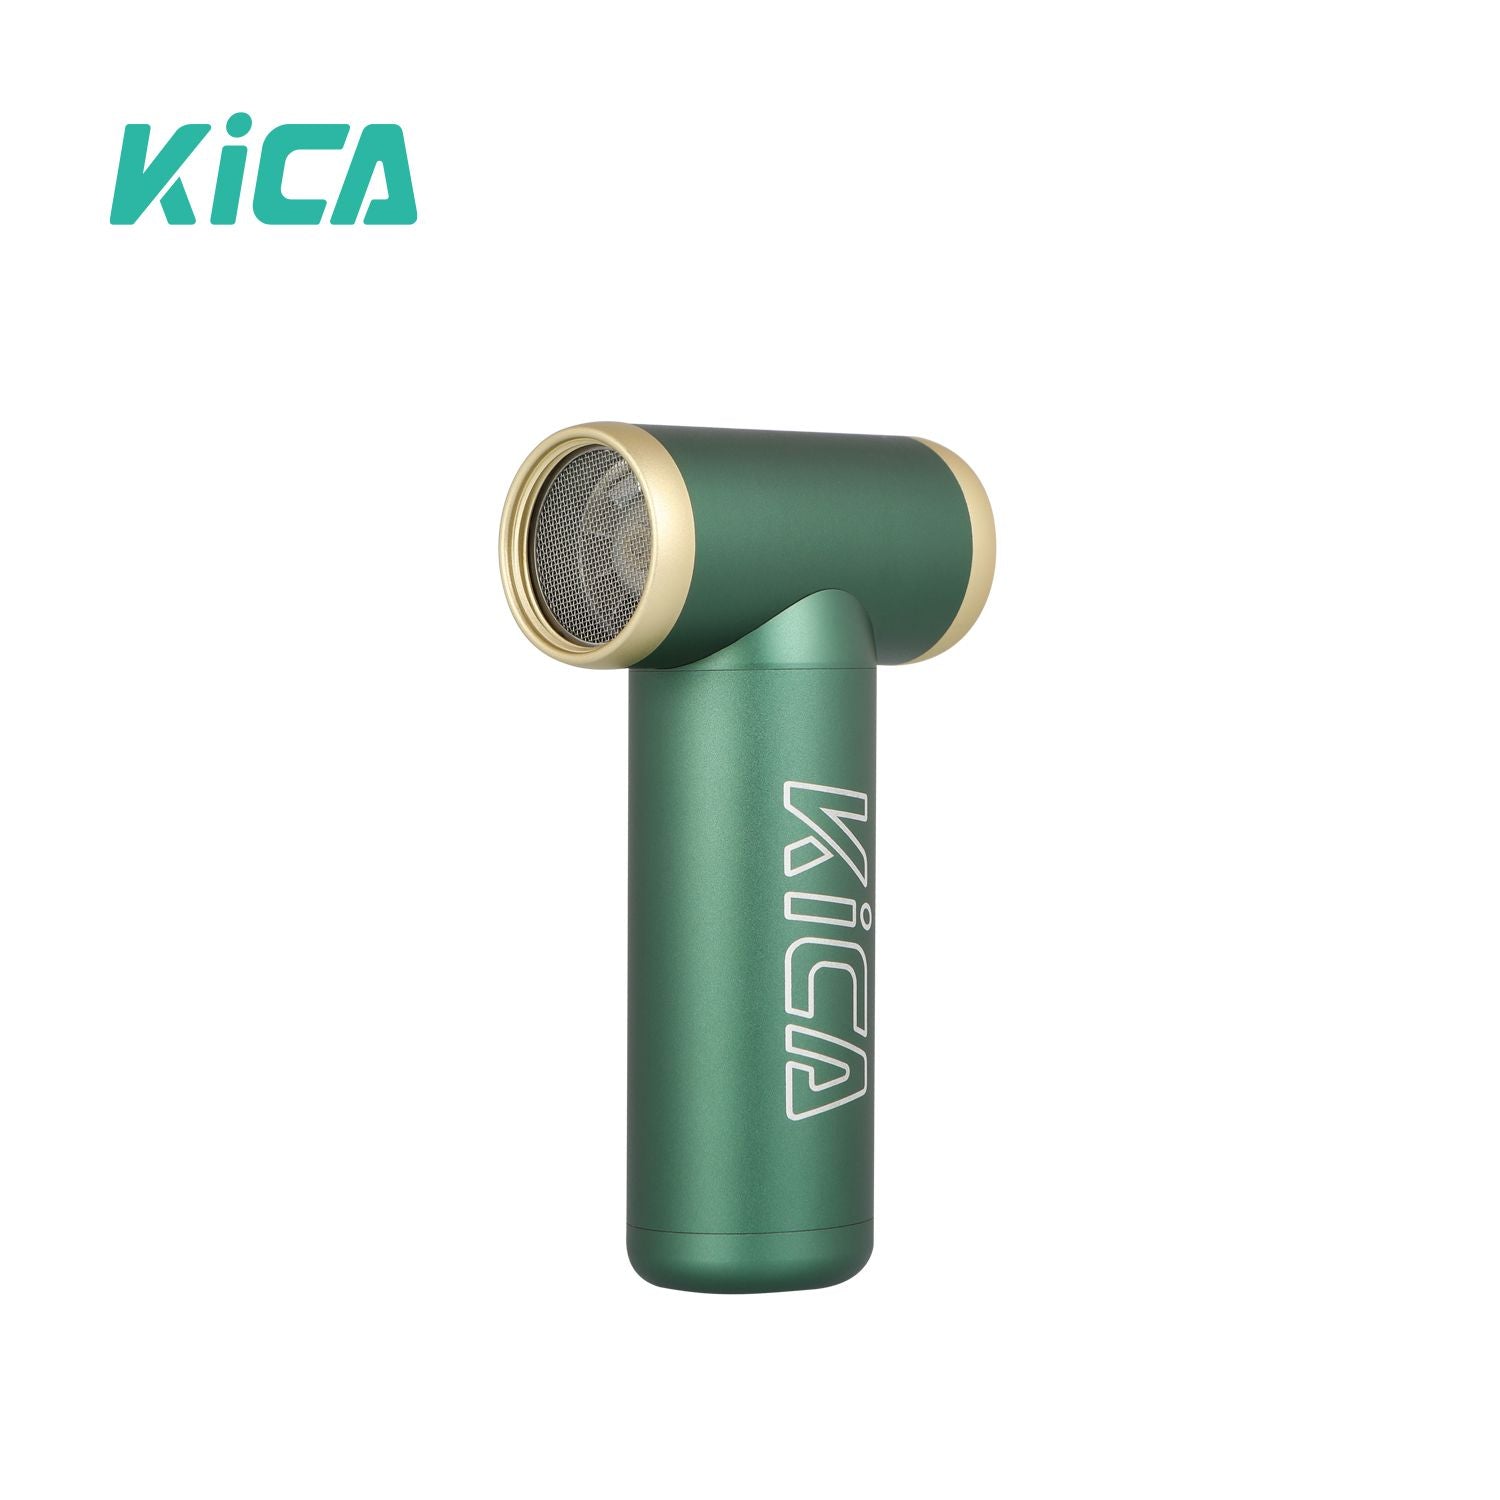 kica-jet-fan-2-green